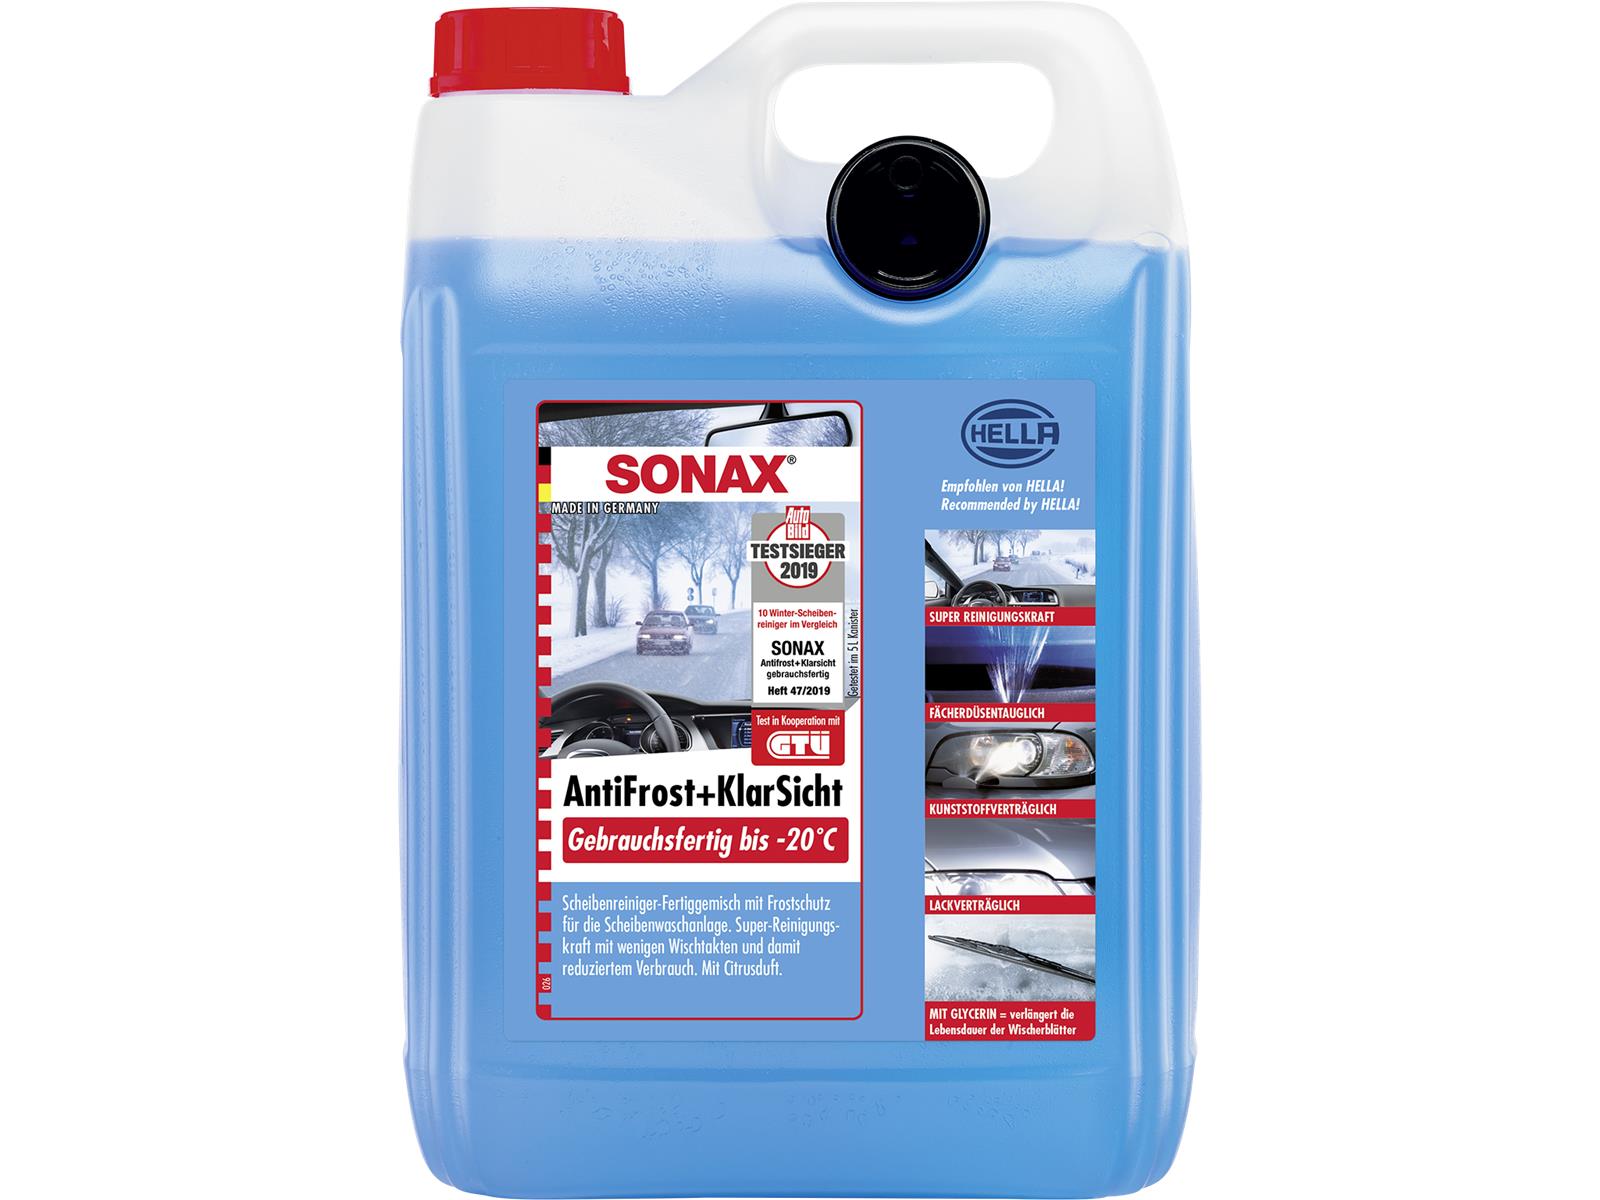 SONAX 03325000 AntiFrost+KlarSicht gebrauchsfertig bis -20°C 5 l